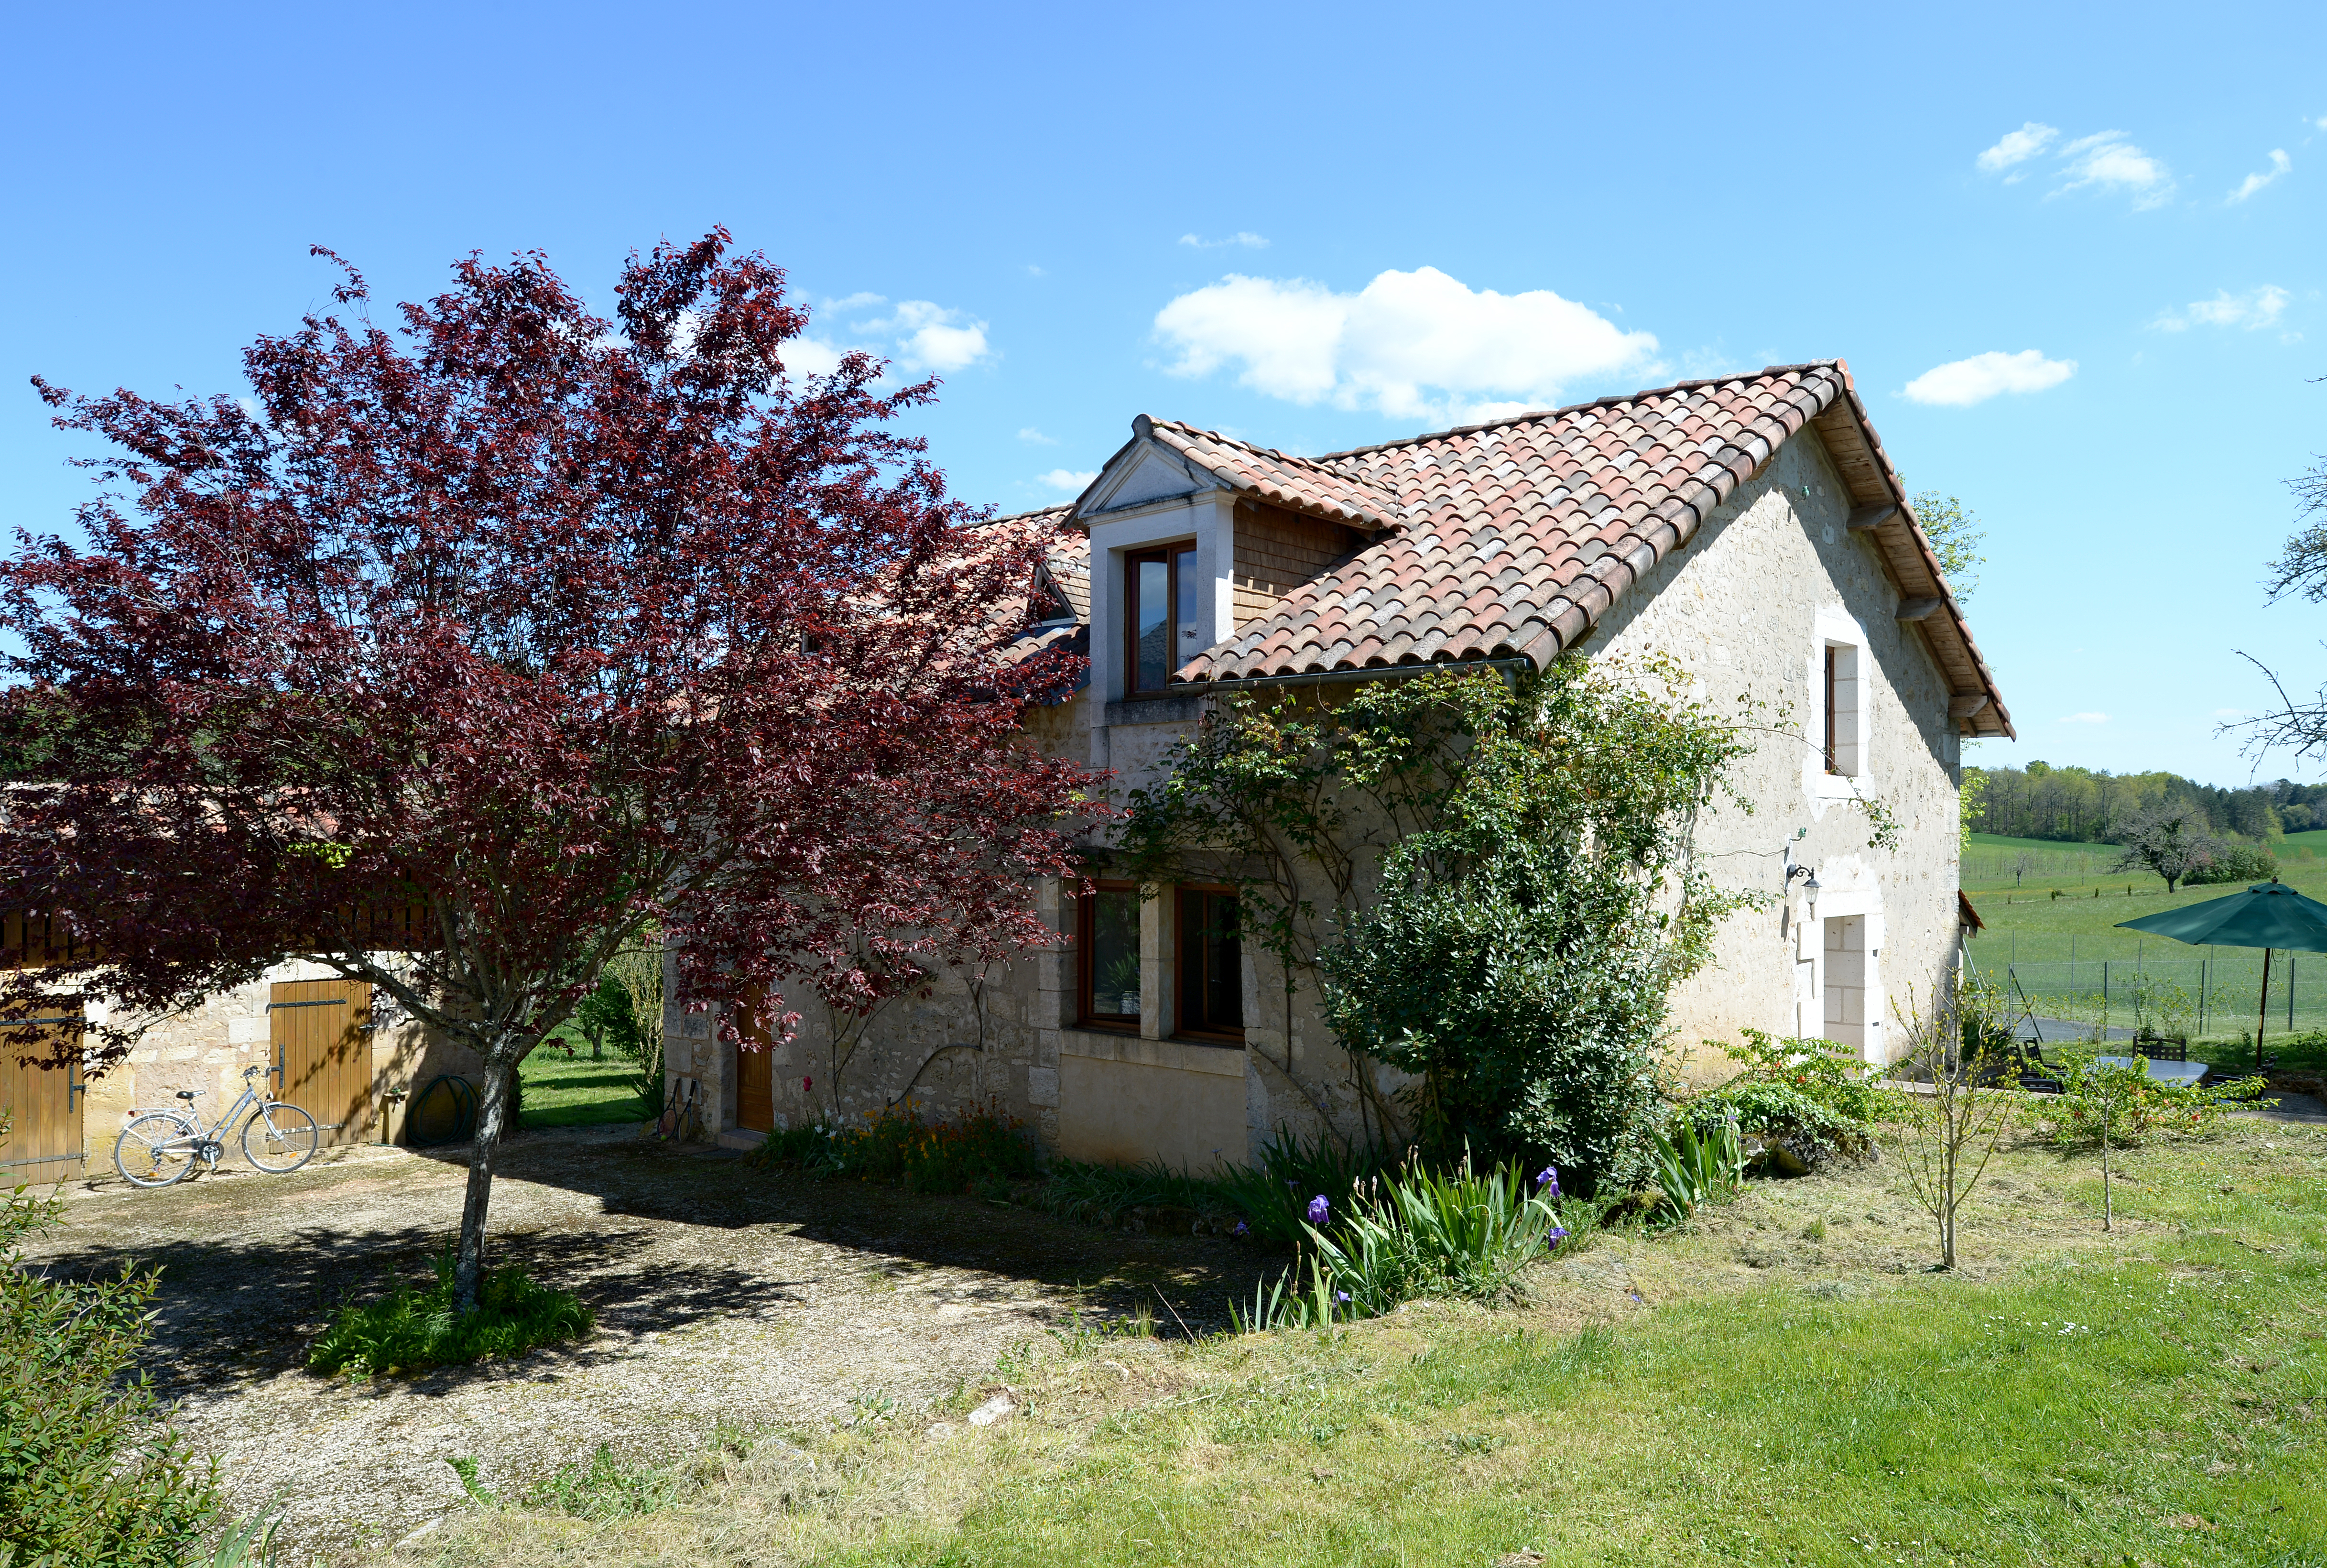 Notre charmant gite en pierre offre le refuge idéal pour vos prochaines vacances en Dordogne